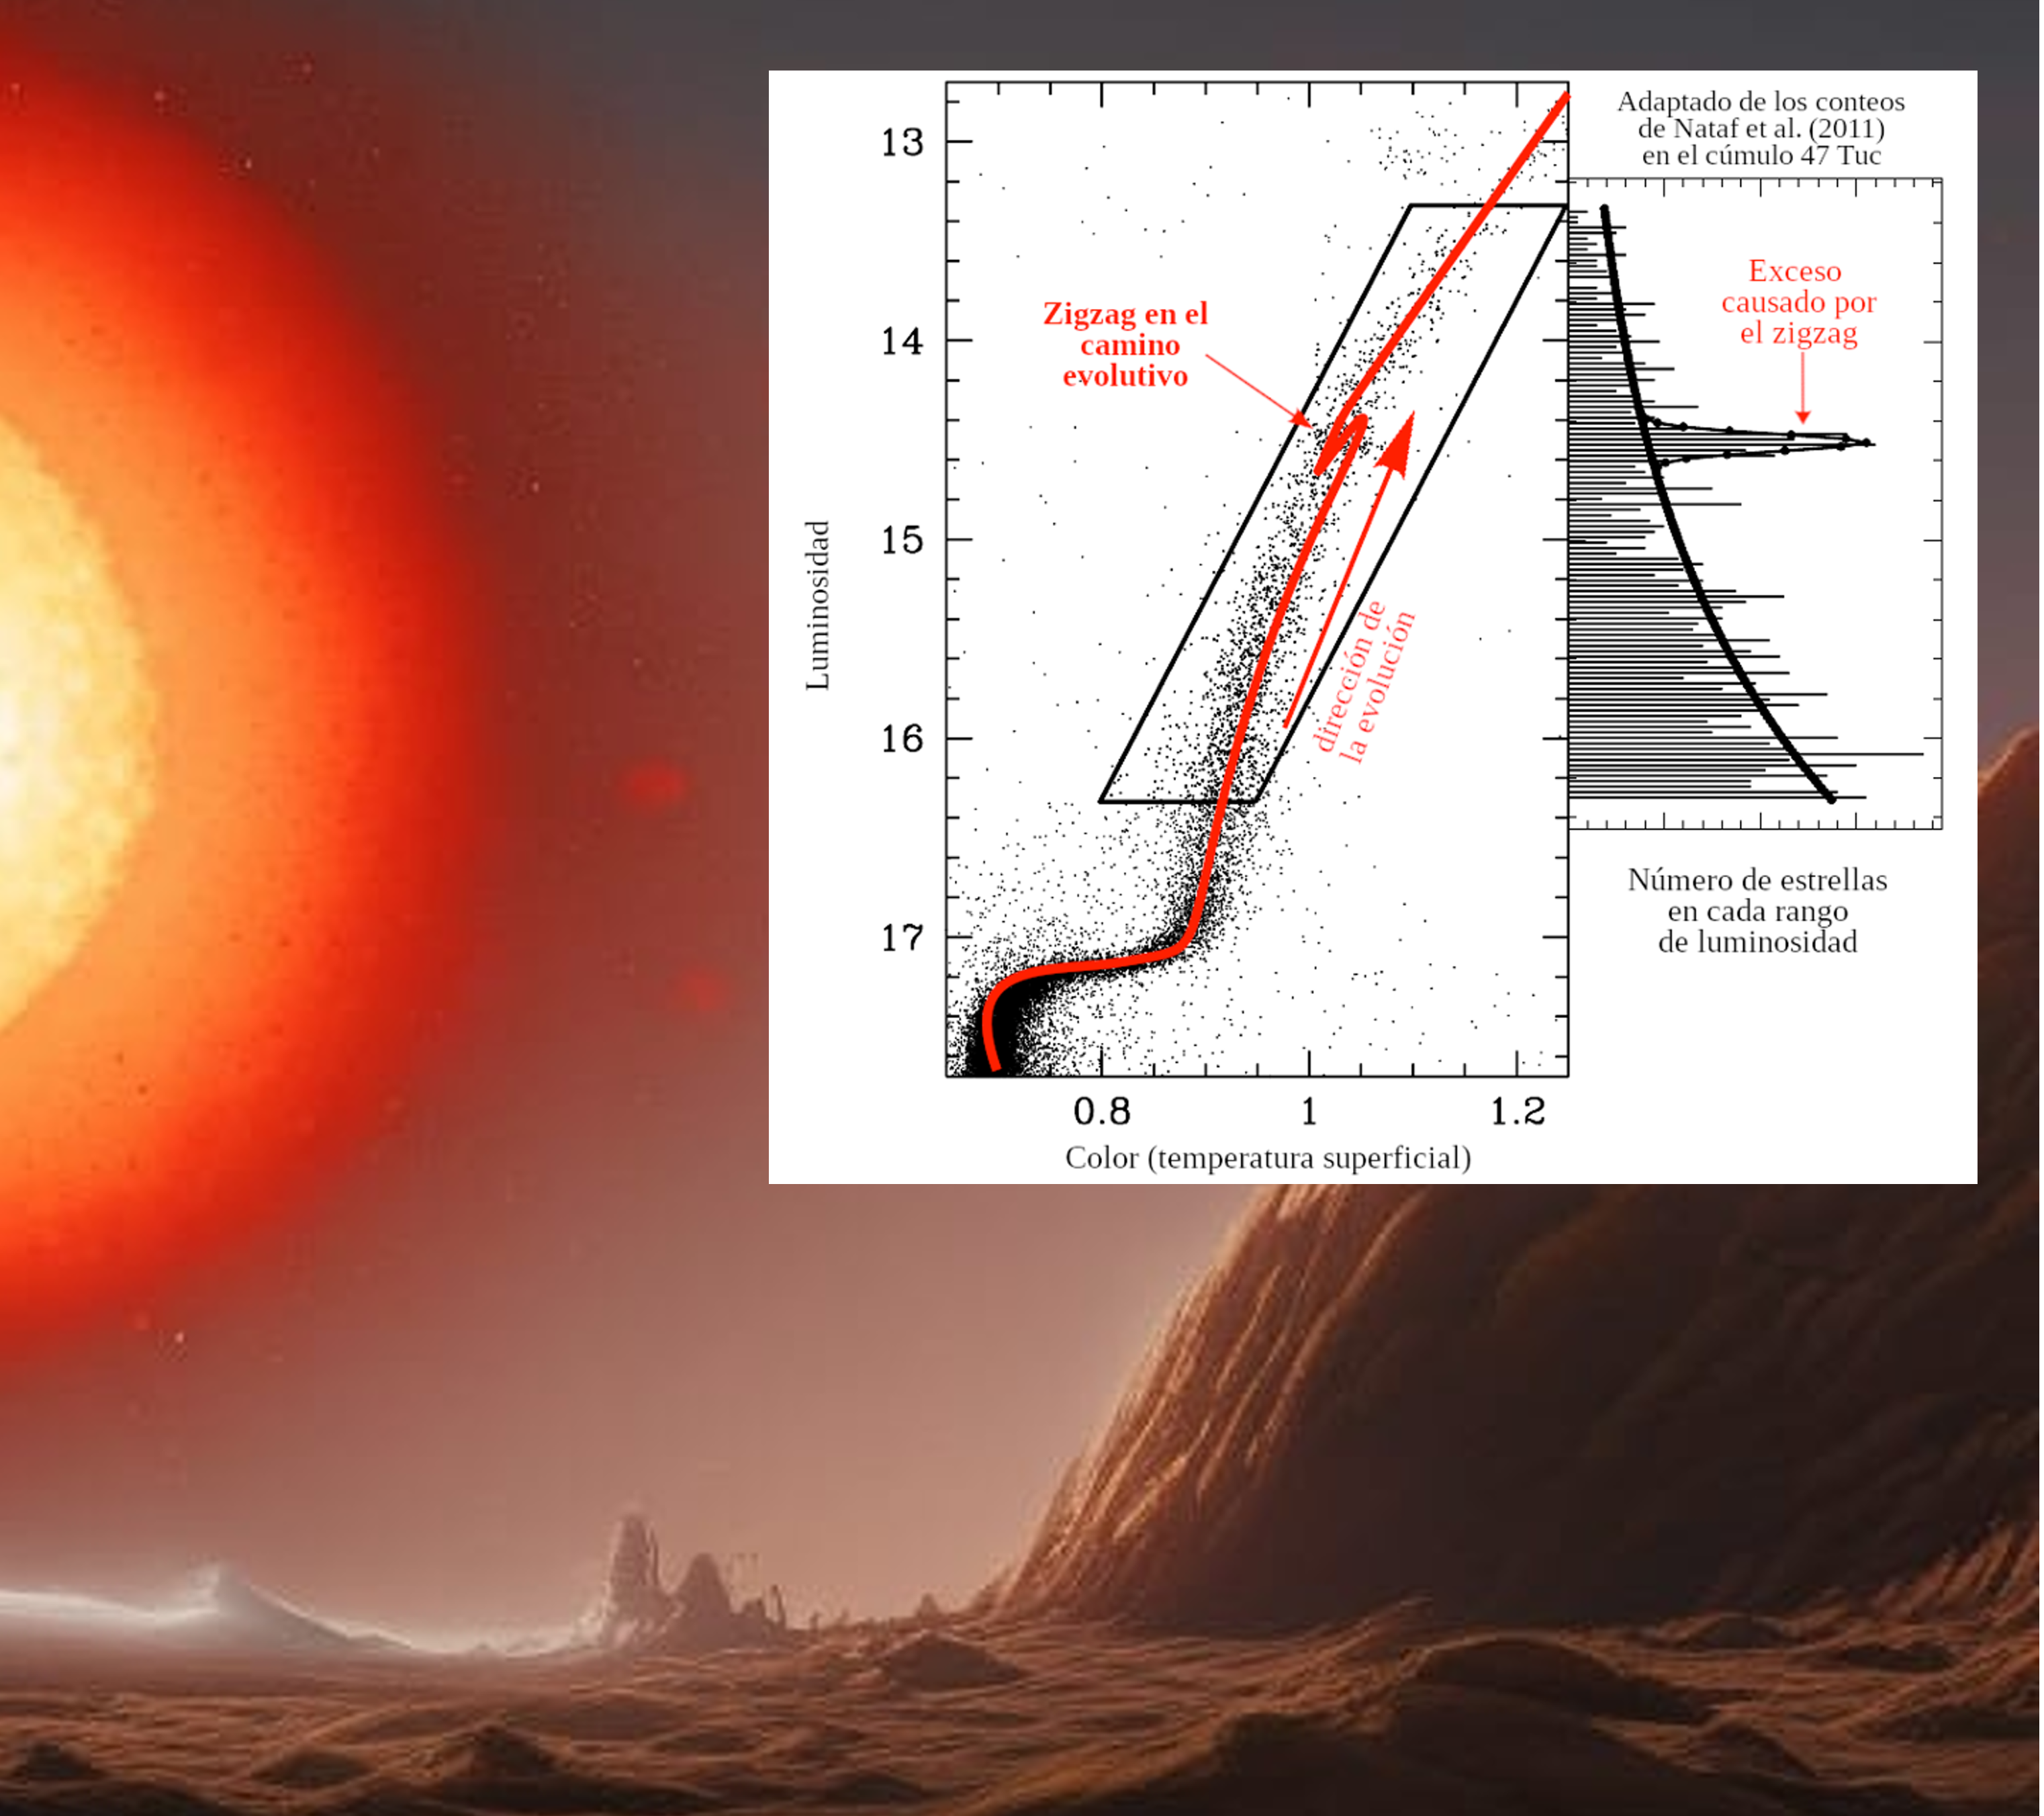 La imagen del fondo es una recreación imaginaria de un planeta próximo a una estrella en fase de transformarse en una gigante roja. Inserto, un gráfico de luminosidad versus la temperatura (o color) mostrando la evolución de la estrella en esta etapa. Se incluye el zigzag al que alude el artículo.